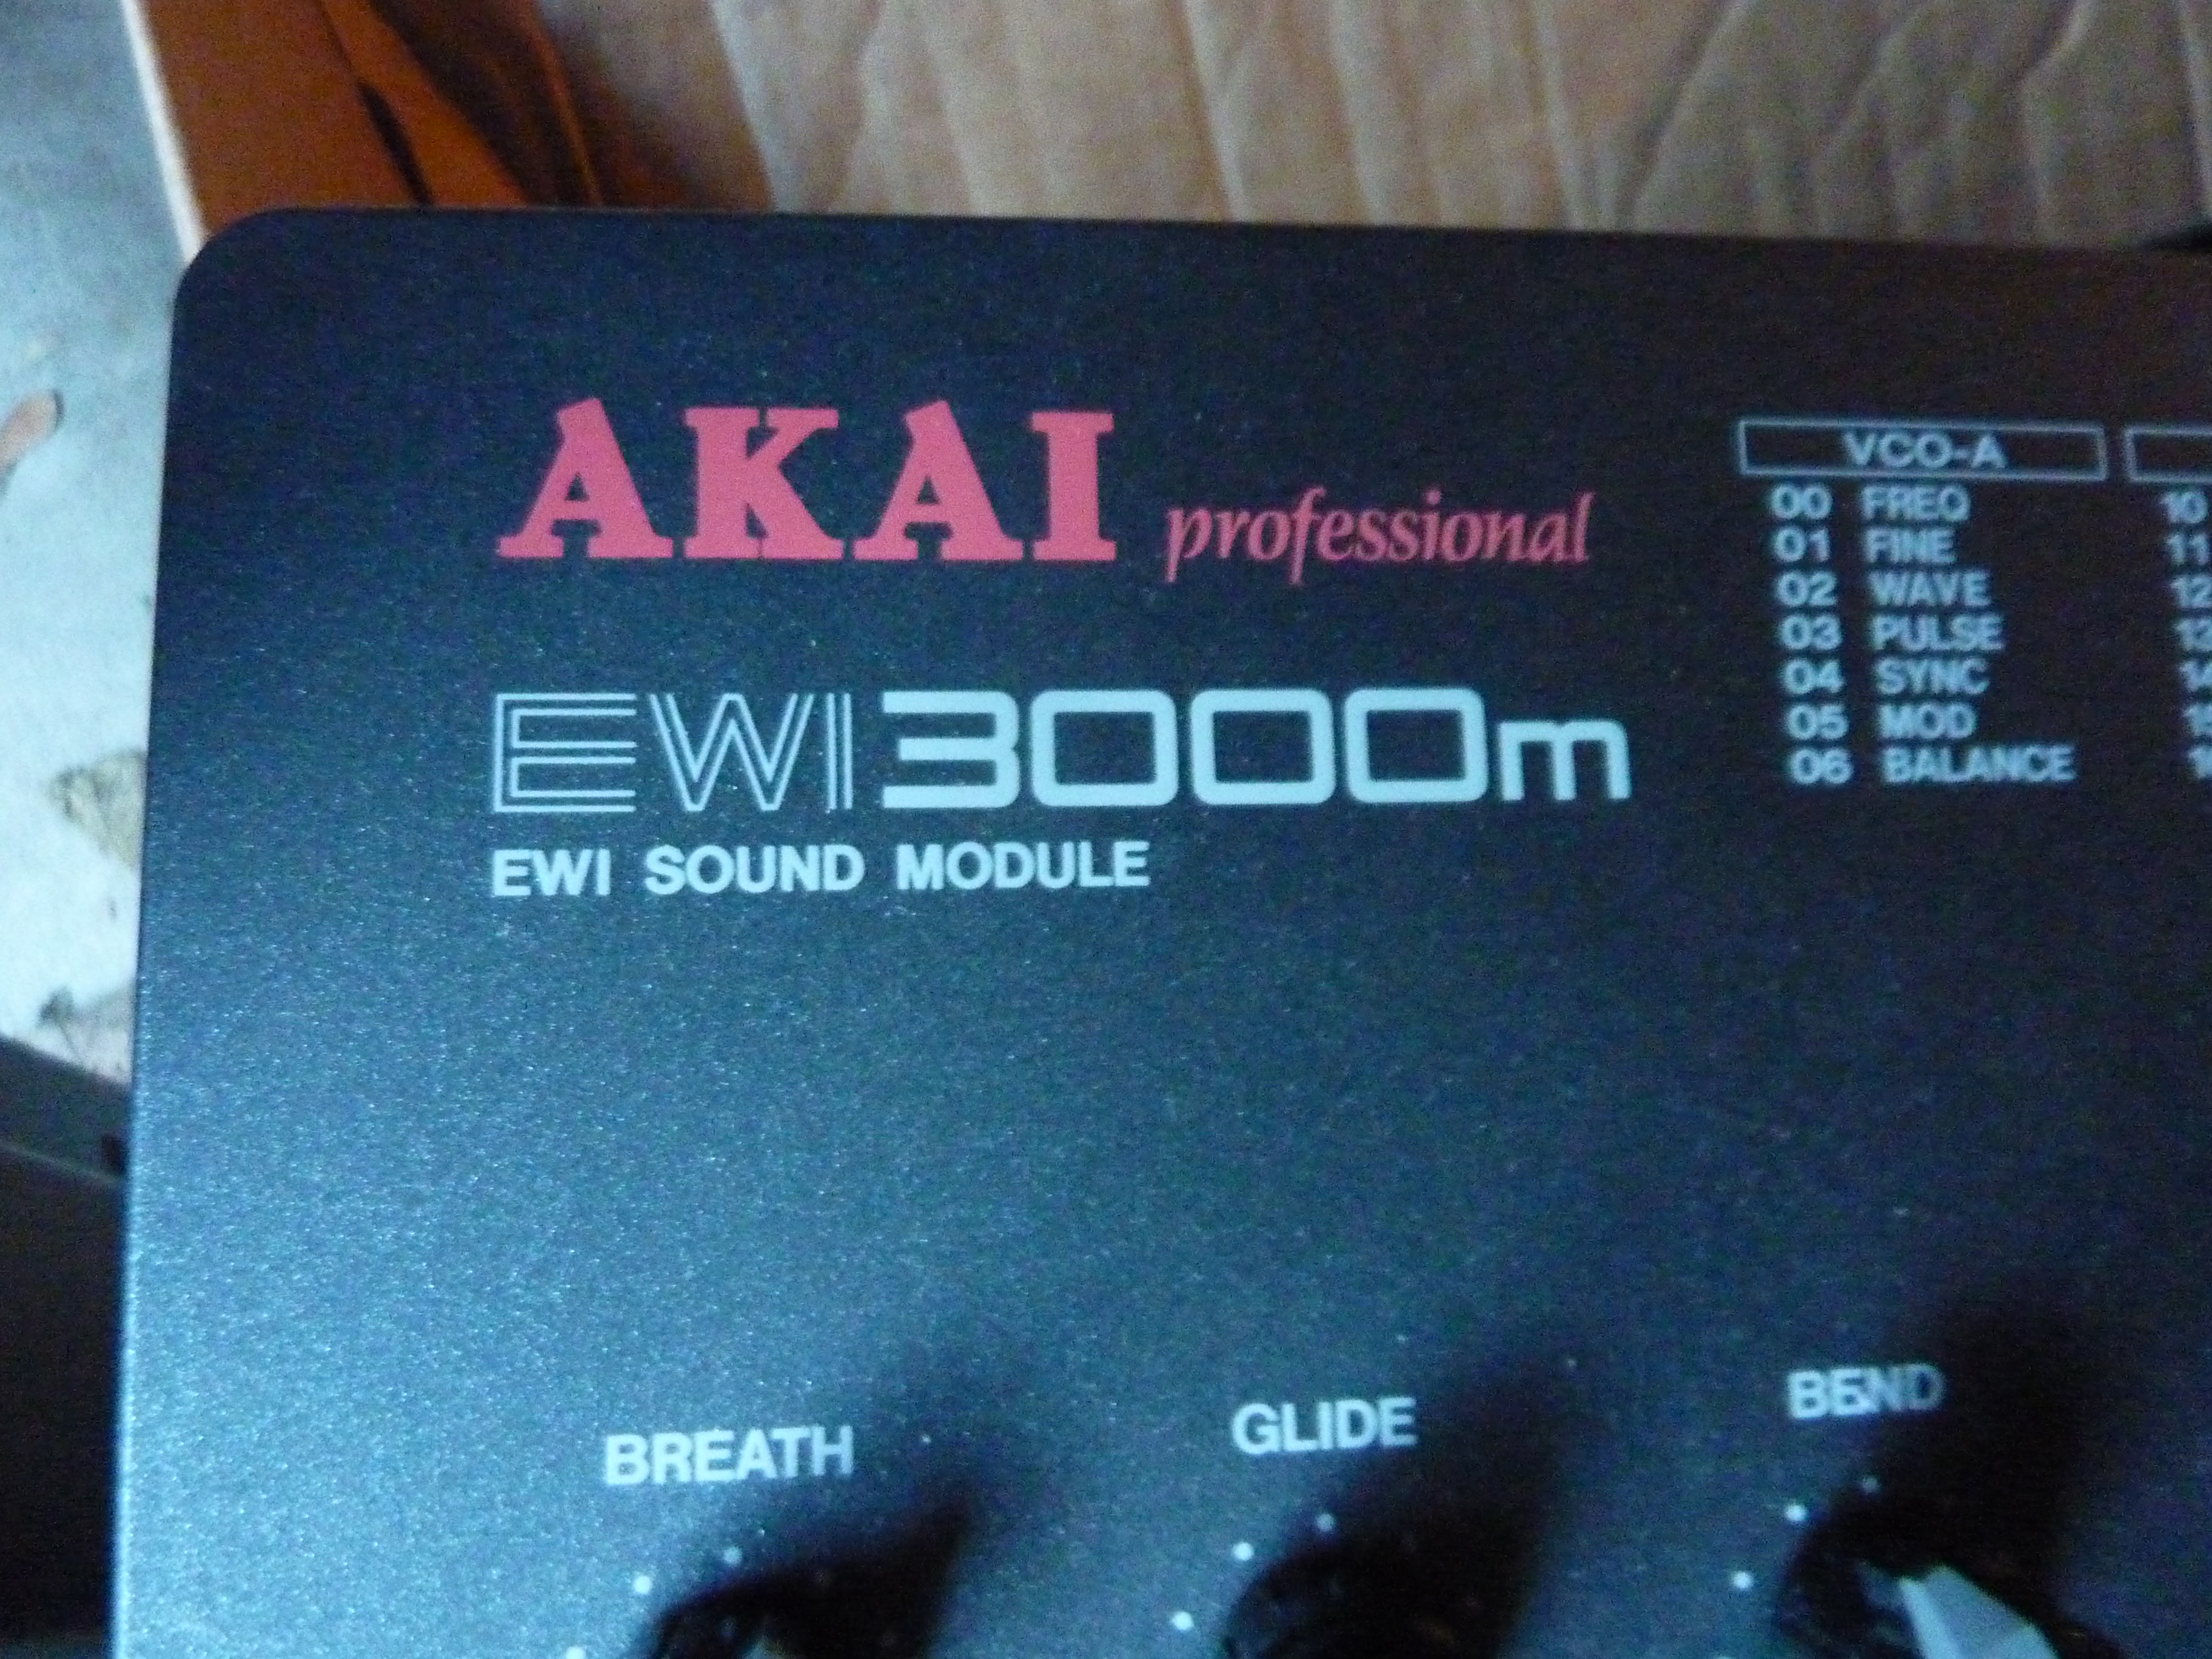 Akai Professional EWI 3000